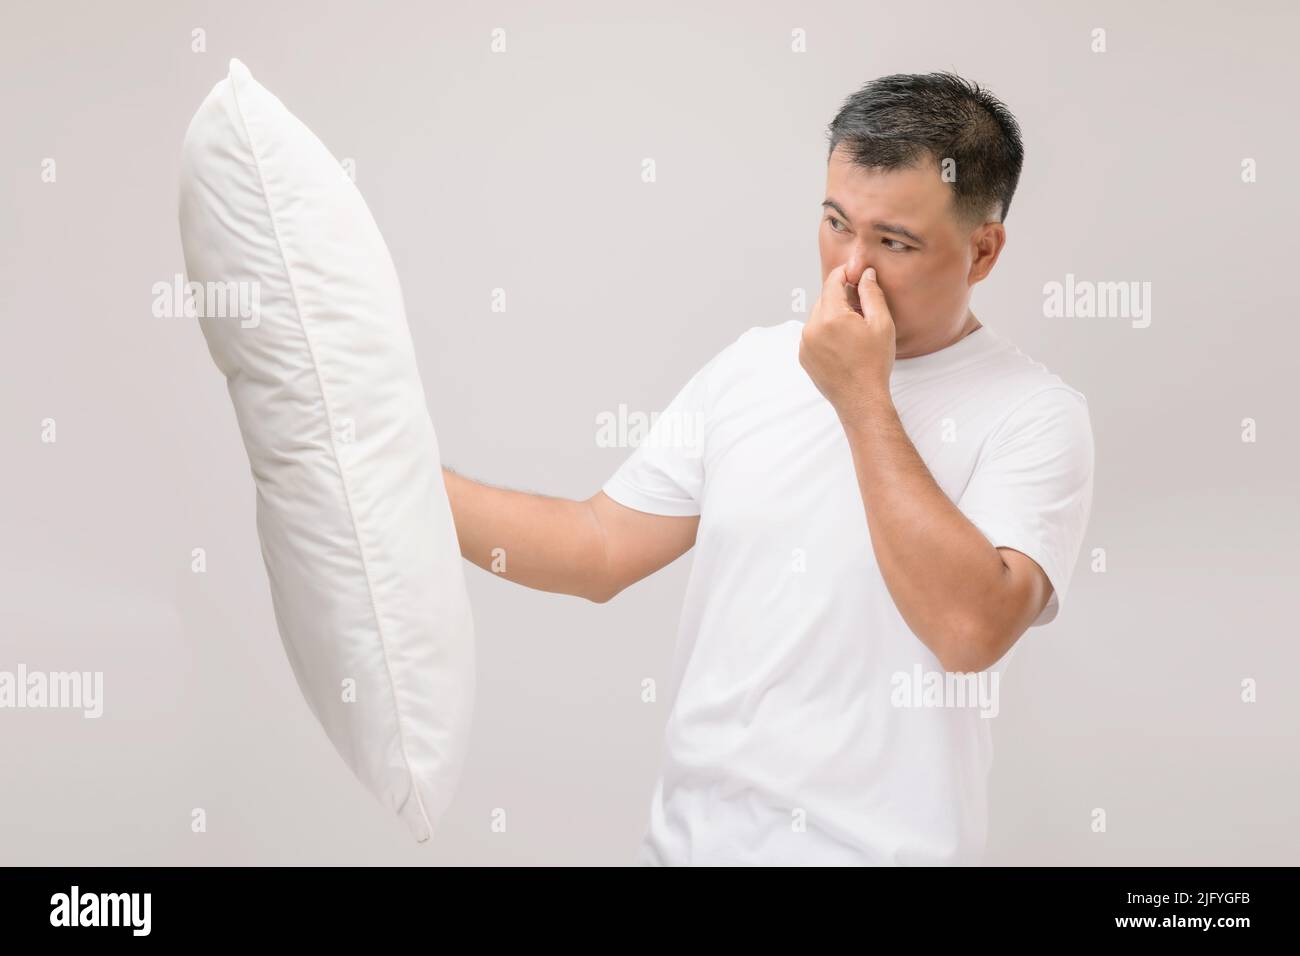 Das Kissen riecht schlecht. Portrait asiatischer Mann mit weißem Kissen und schlechtem Geruch. Studio auf grauem Hintergrund aufgenommen Stockfoto